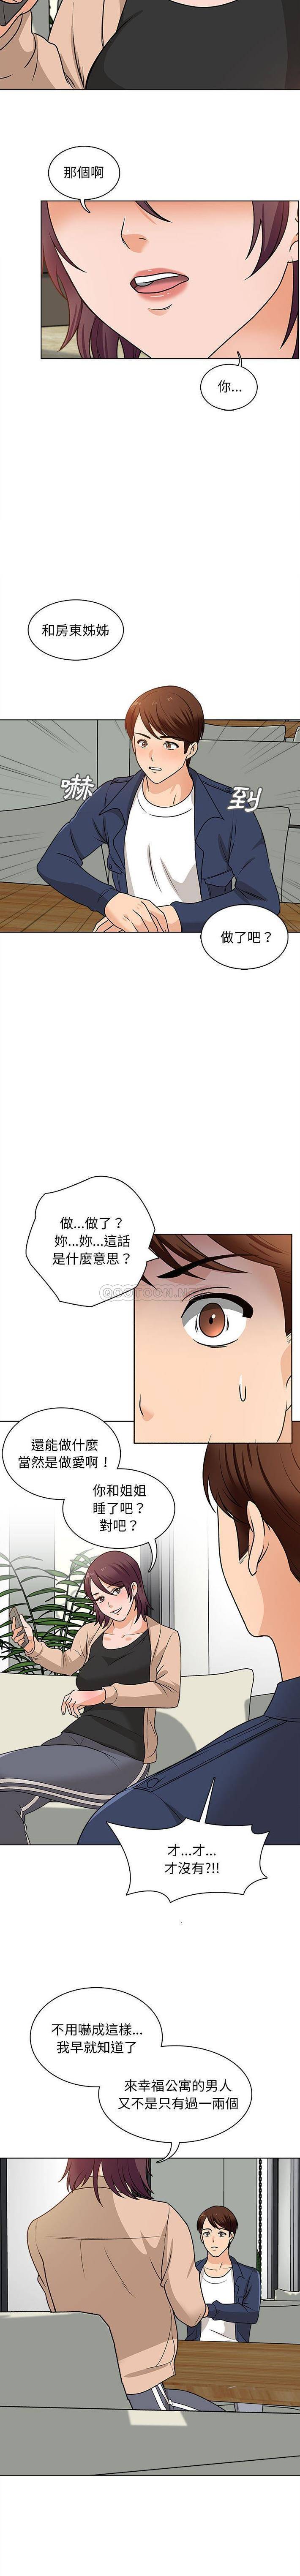 韩国污漫画 幸福公寓 第16话 8